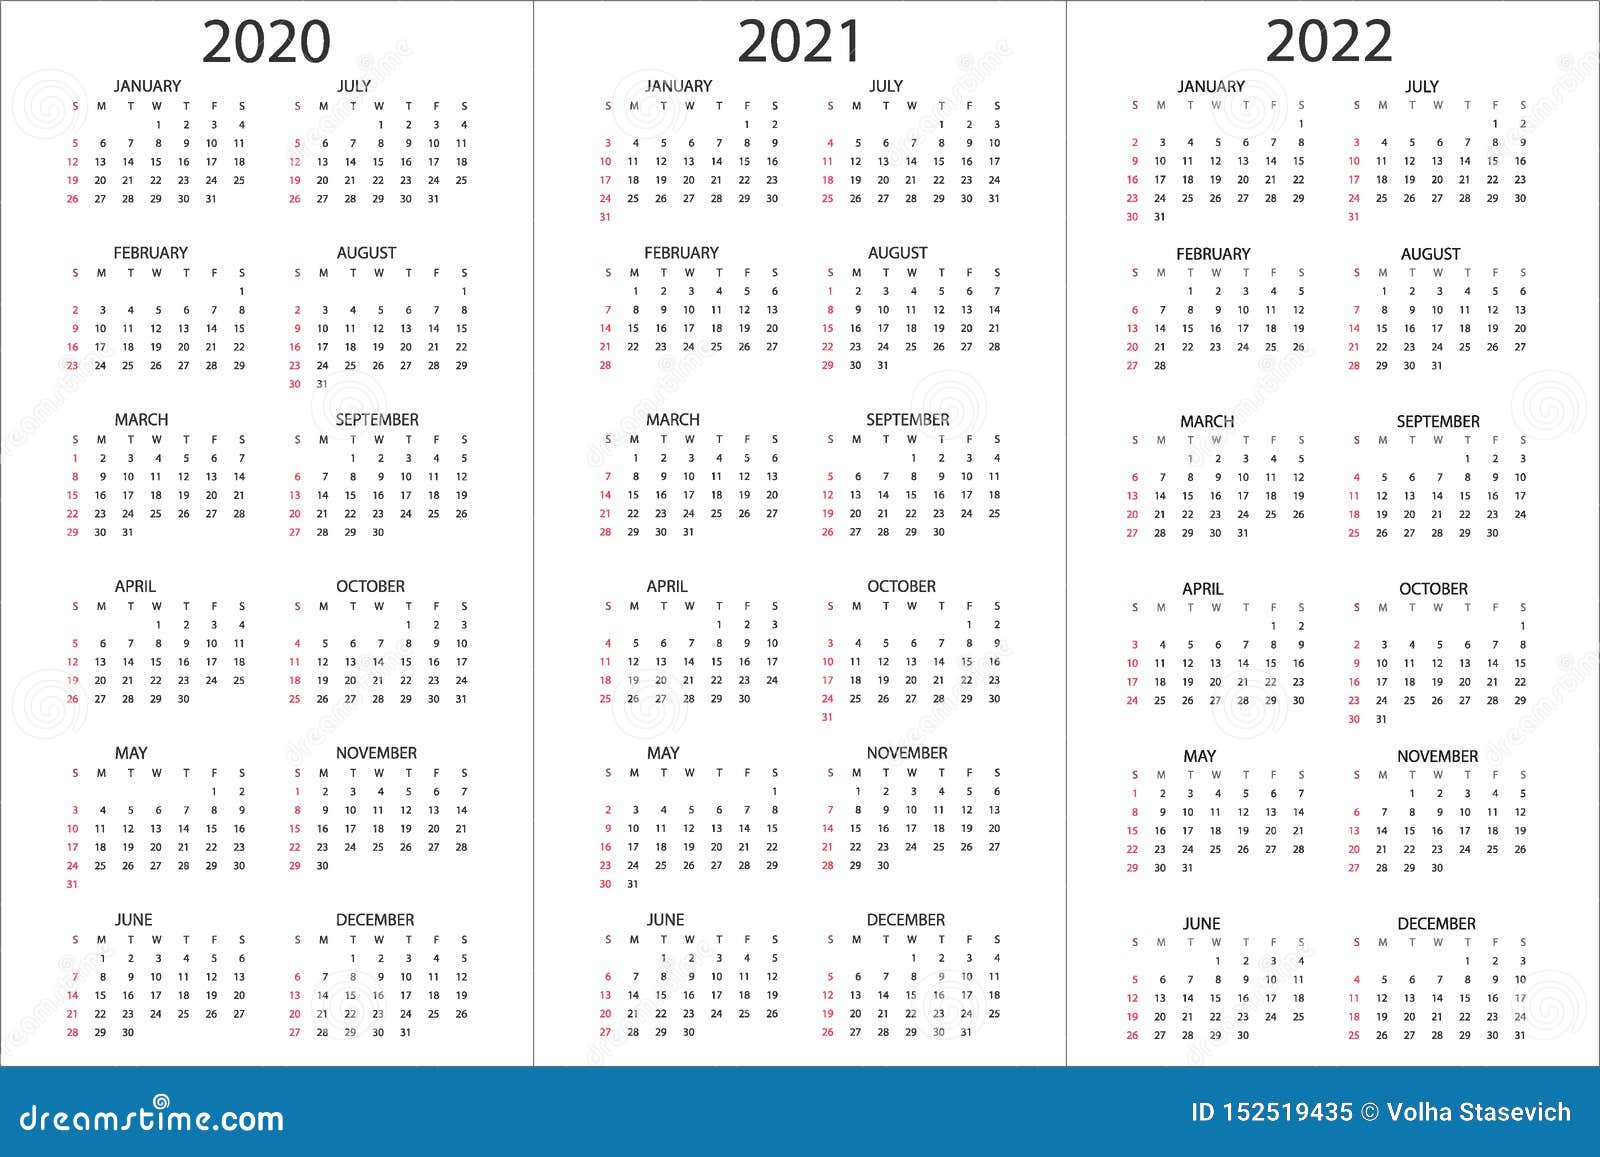 31 декабря 2020 2021. Календарь на 2022 год вертикальный сетка дни недели сбоку. Календарь 2022 сбоку вертикально. Календарь на 2022 год вертикальный. Календарь 2019 2020 2021.